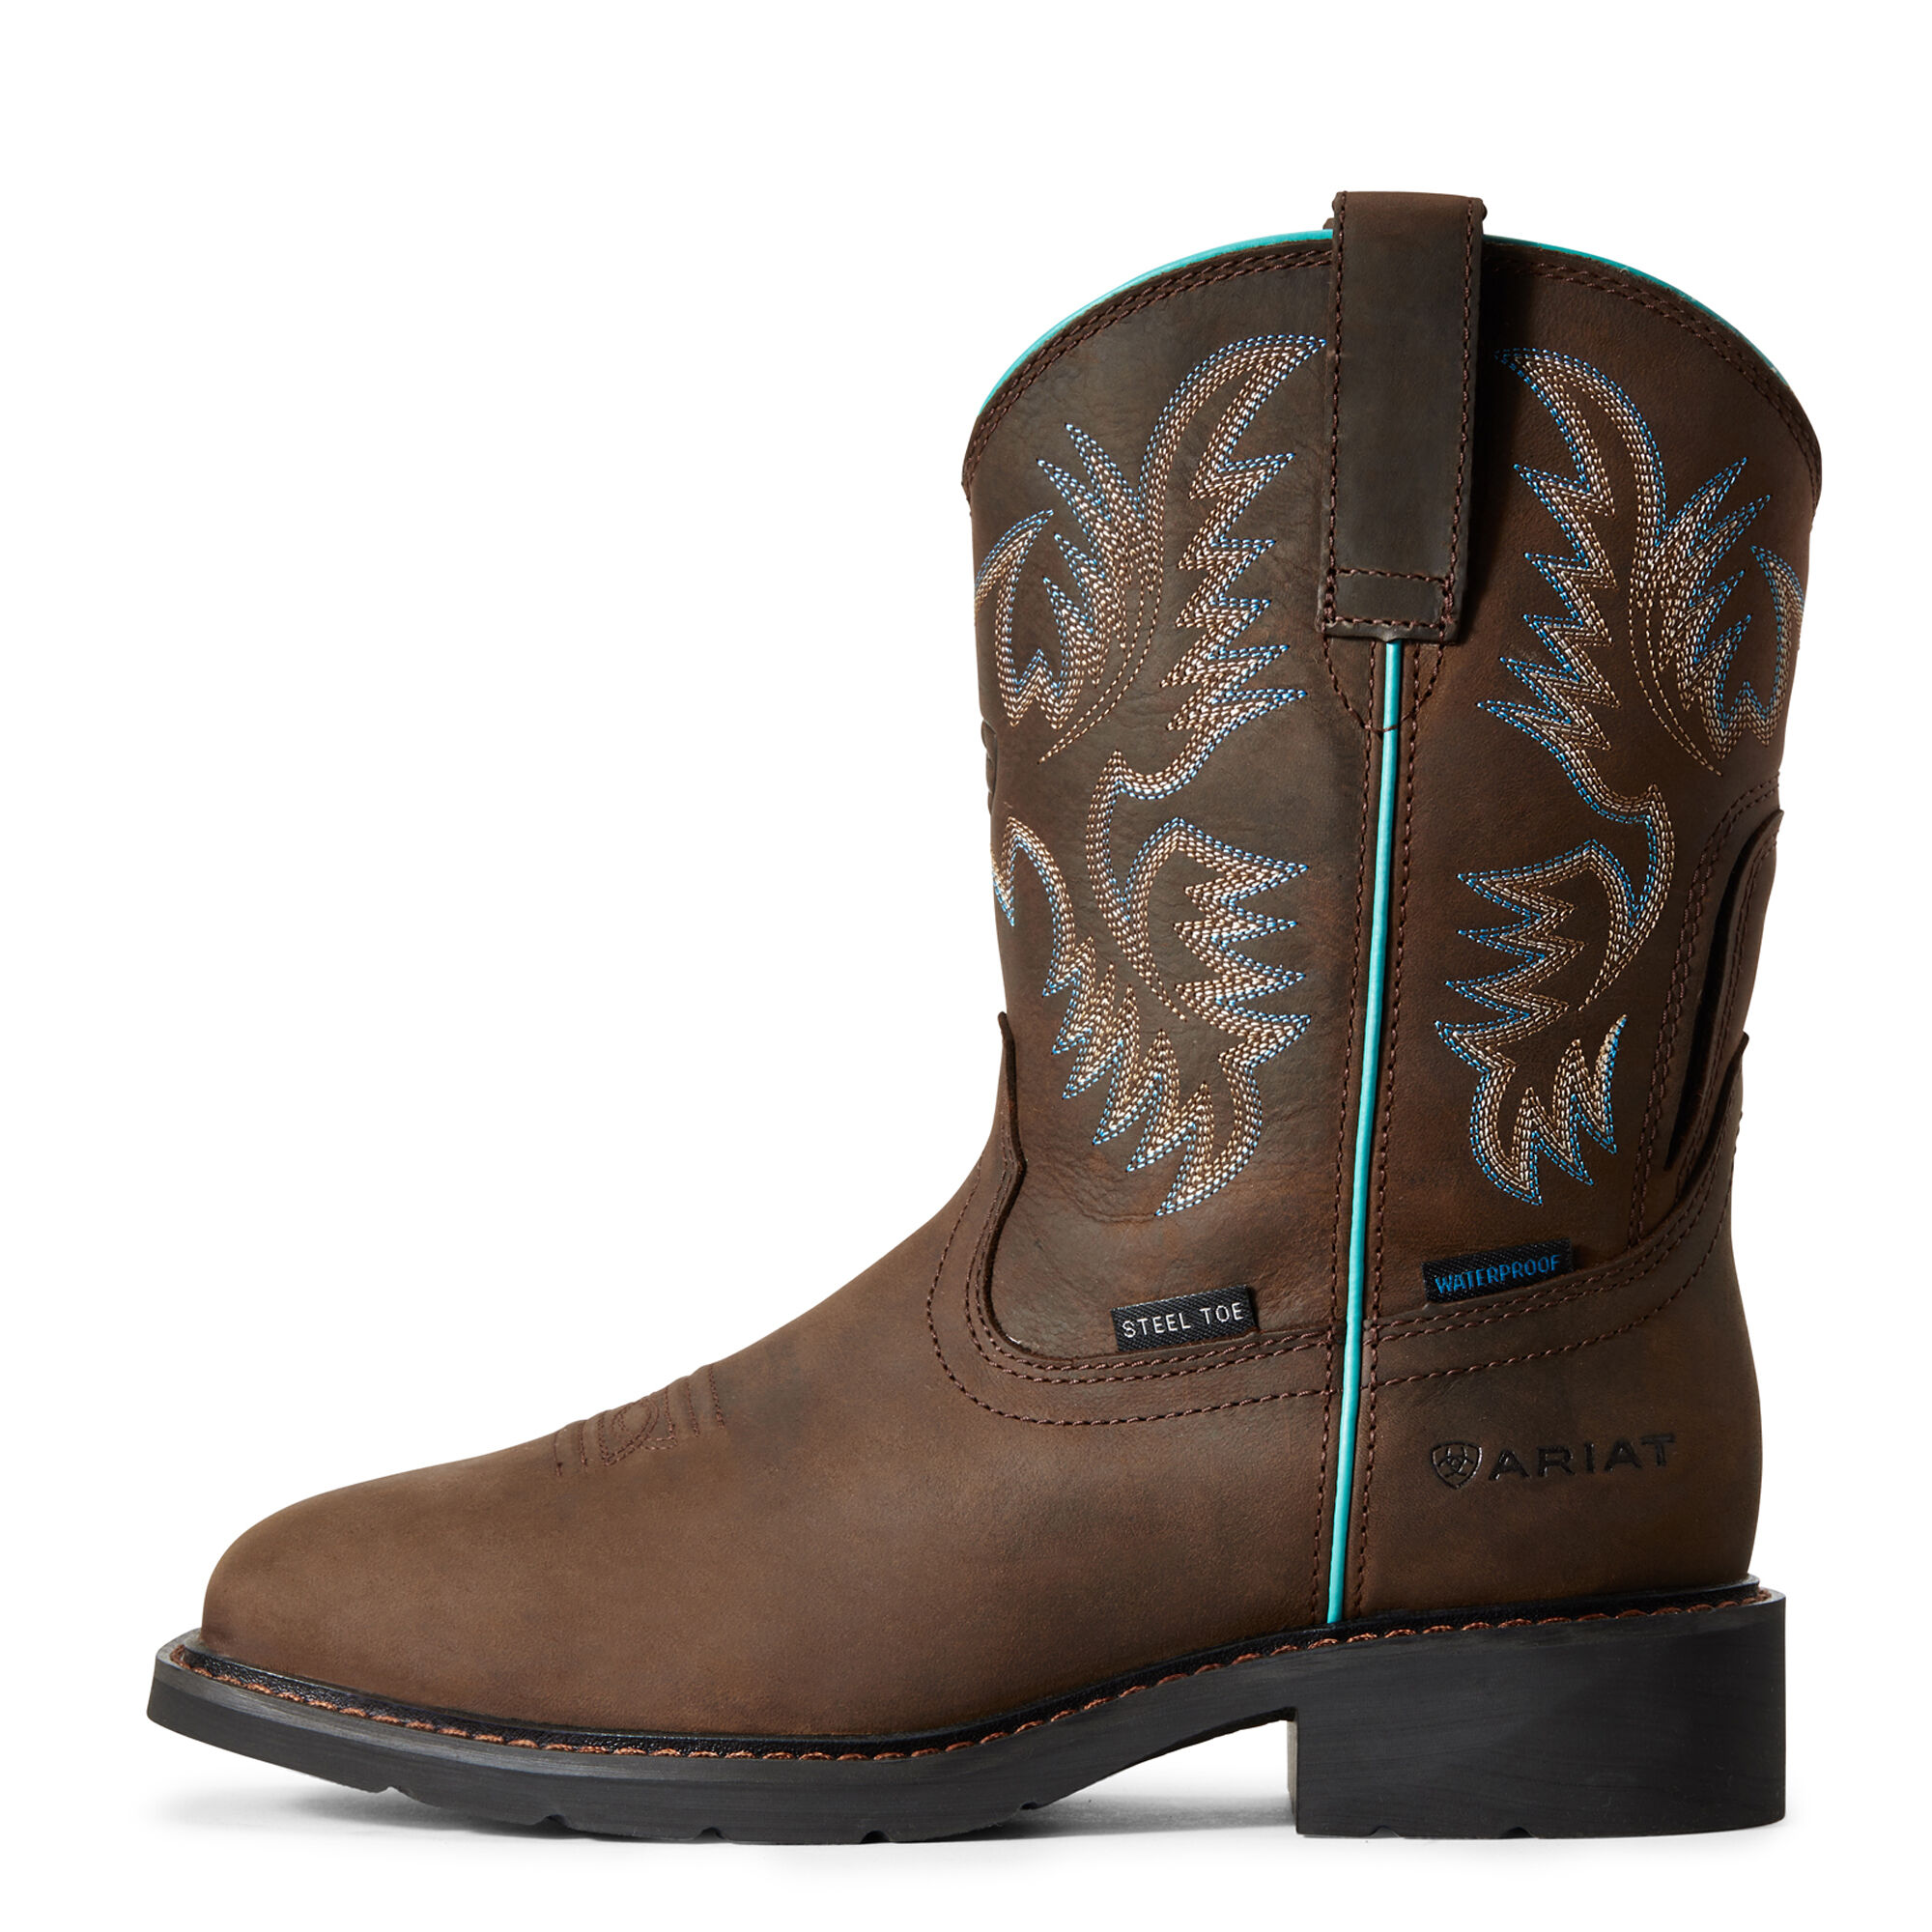 waterproof steeltoe boots